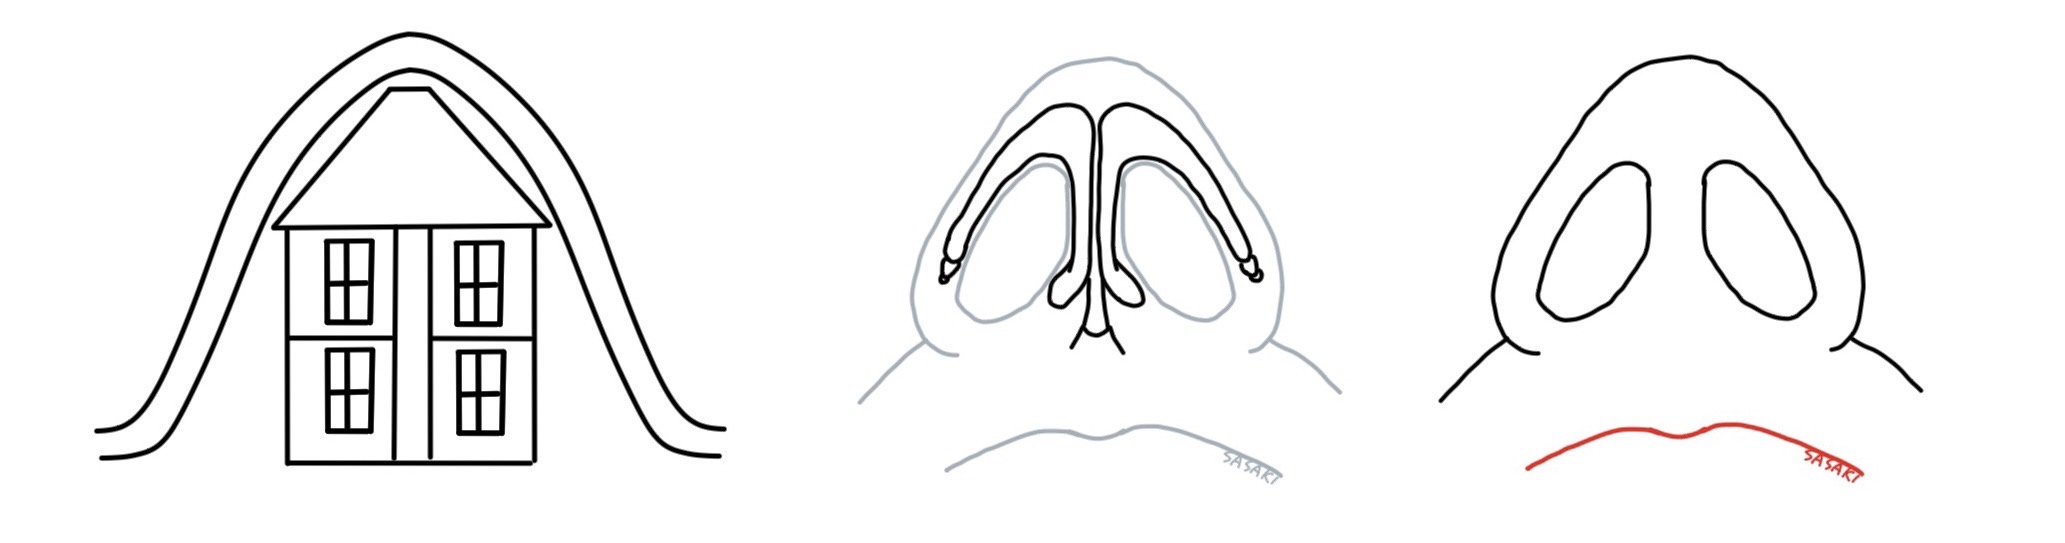 鼻中隔延長を模式図で表現したもの